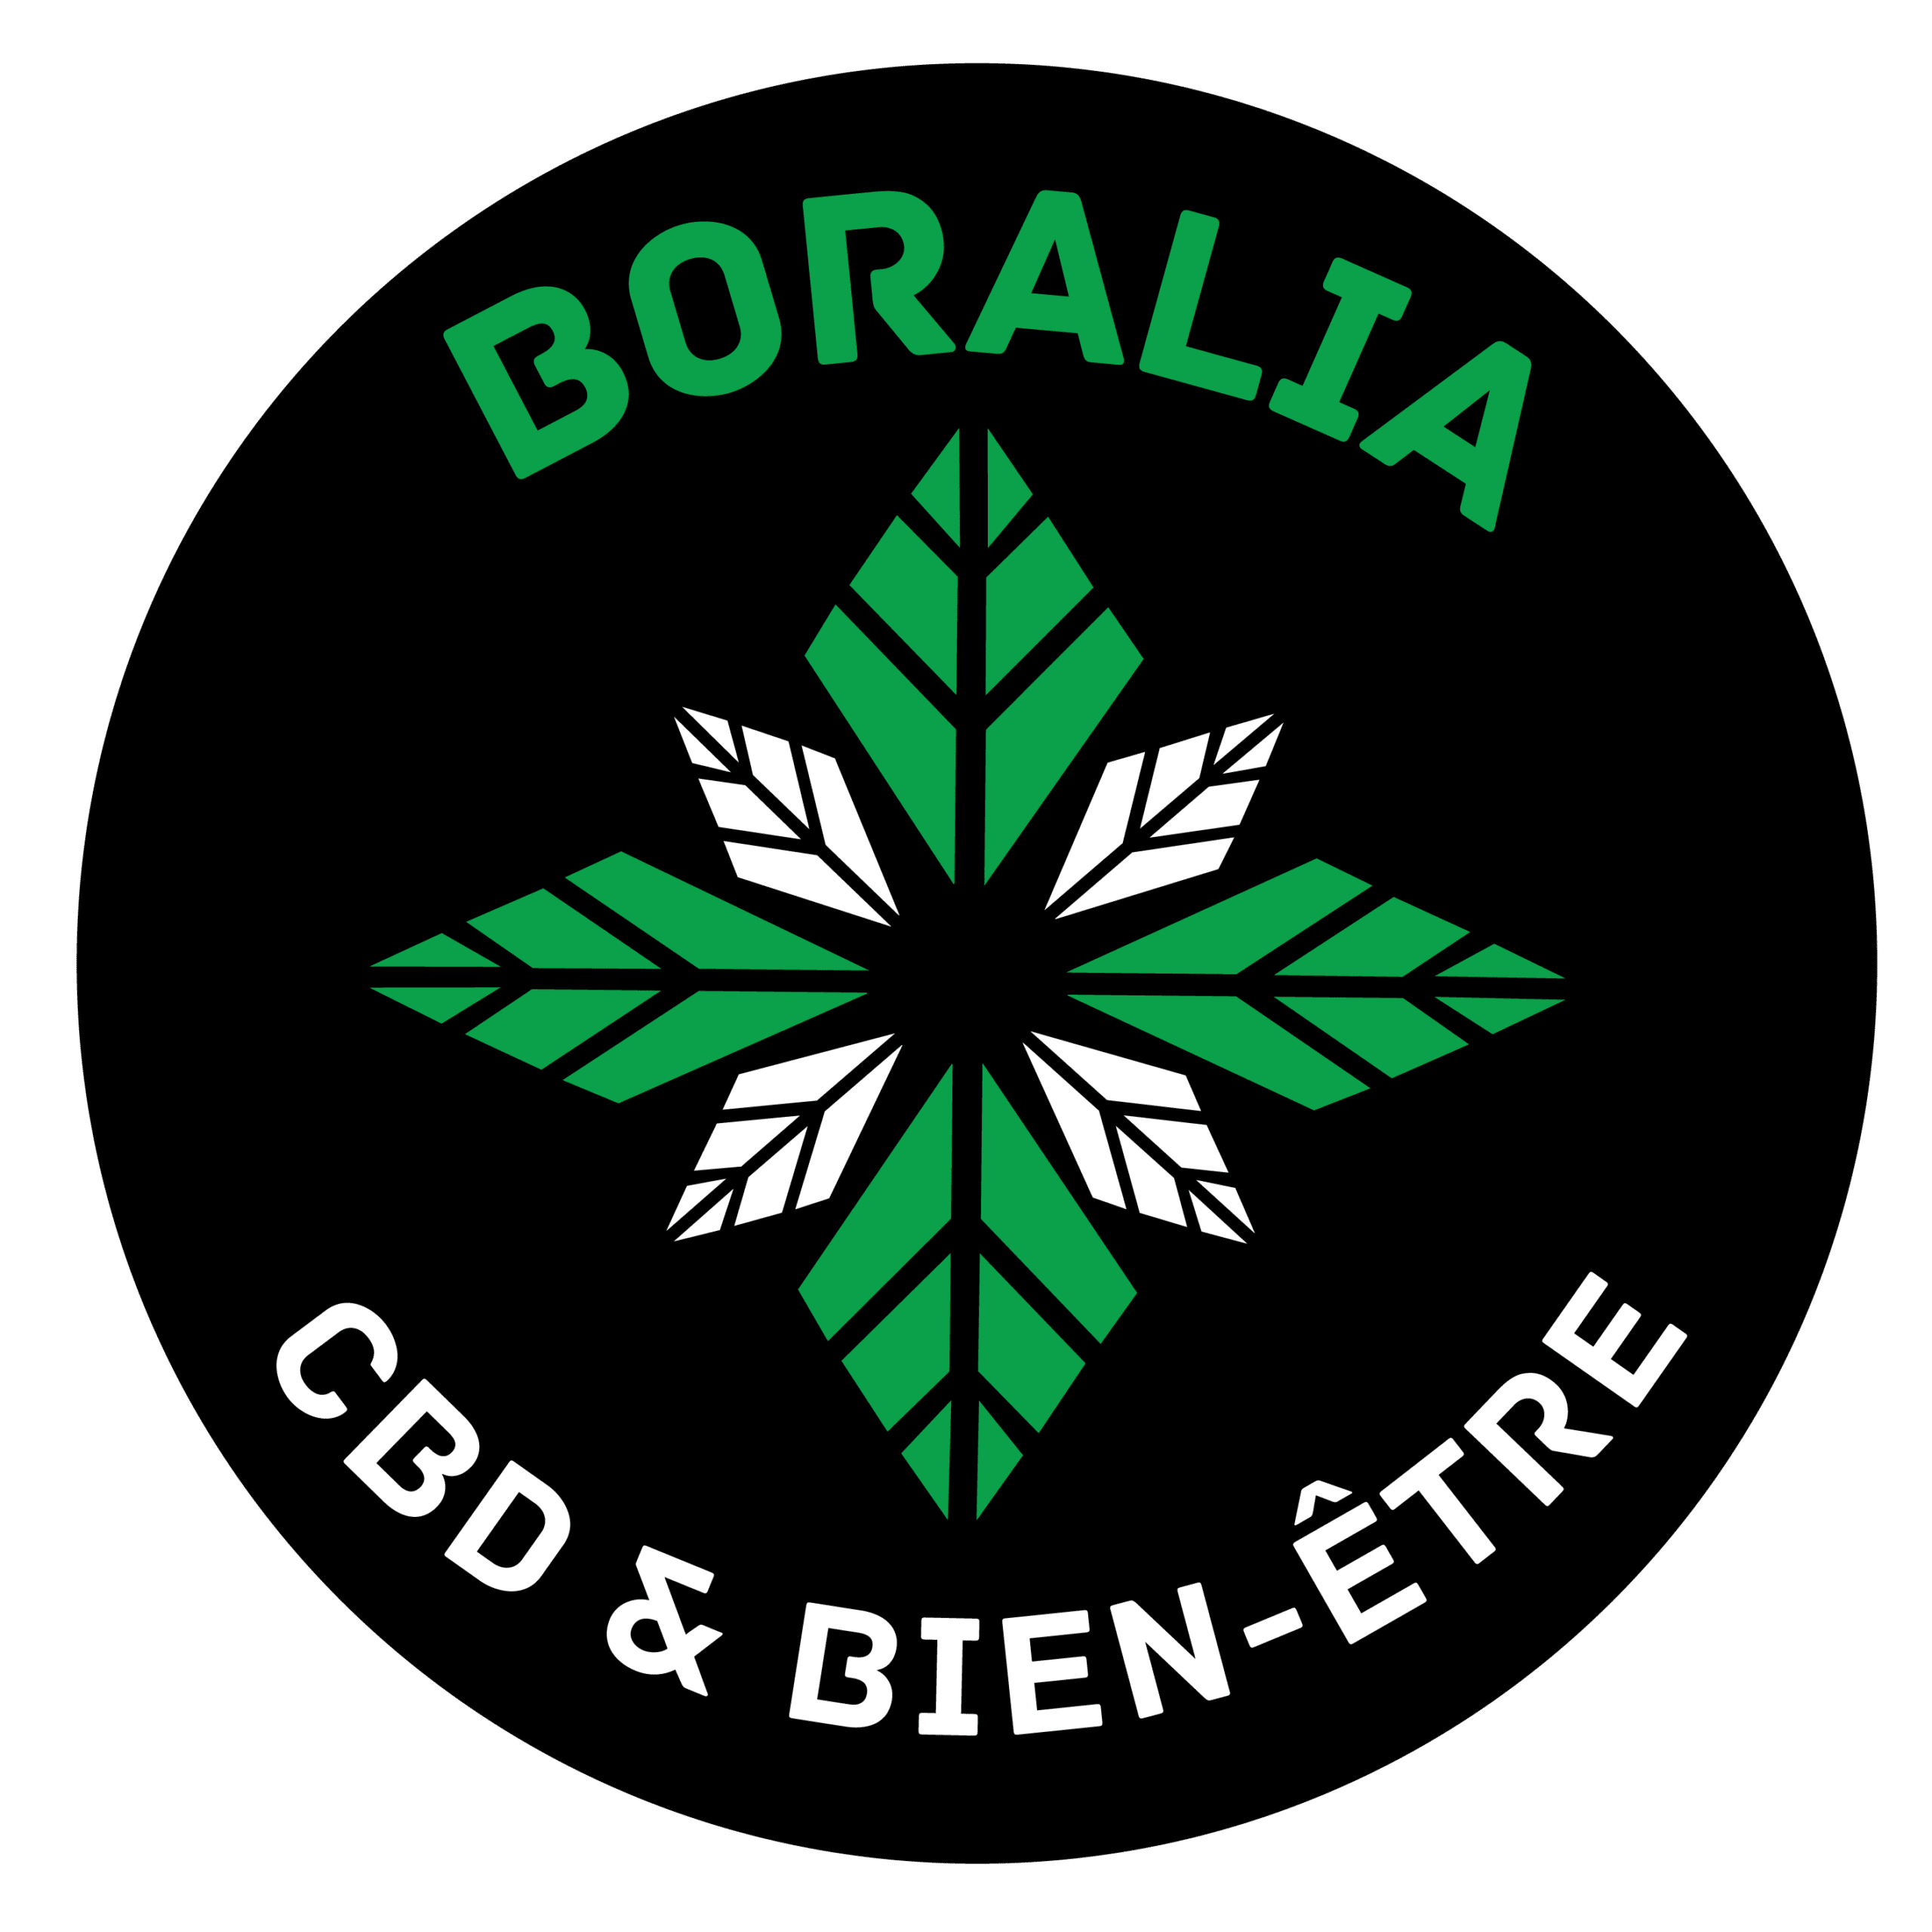 Boralia cbd